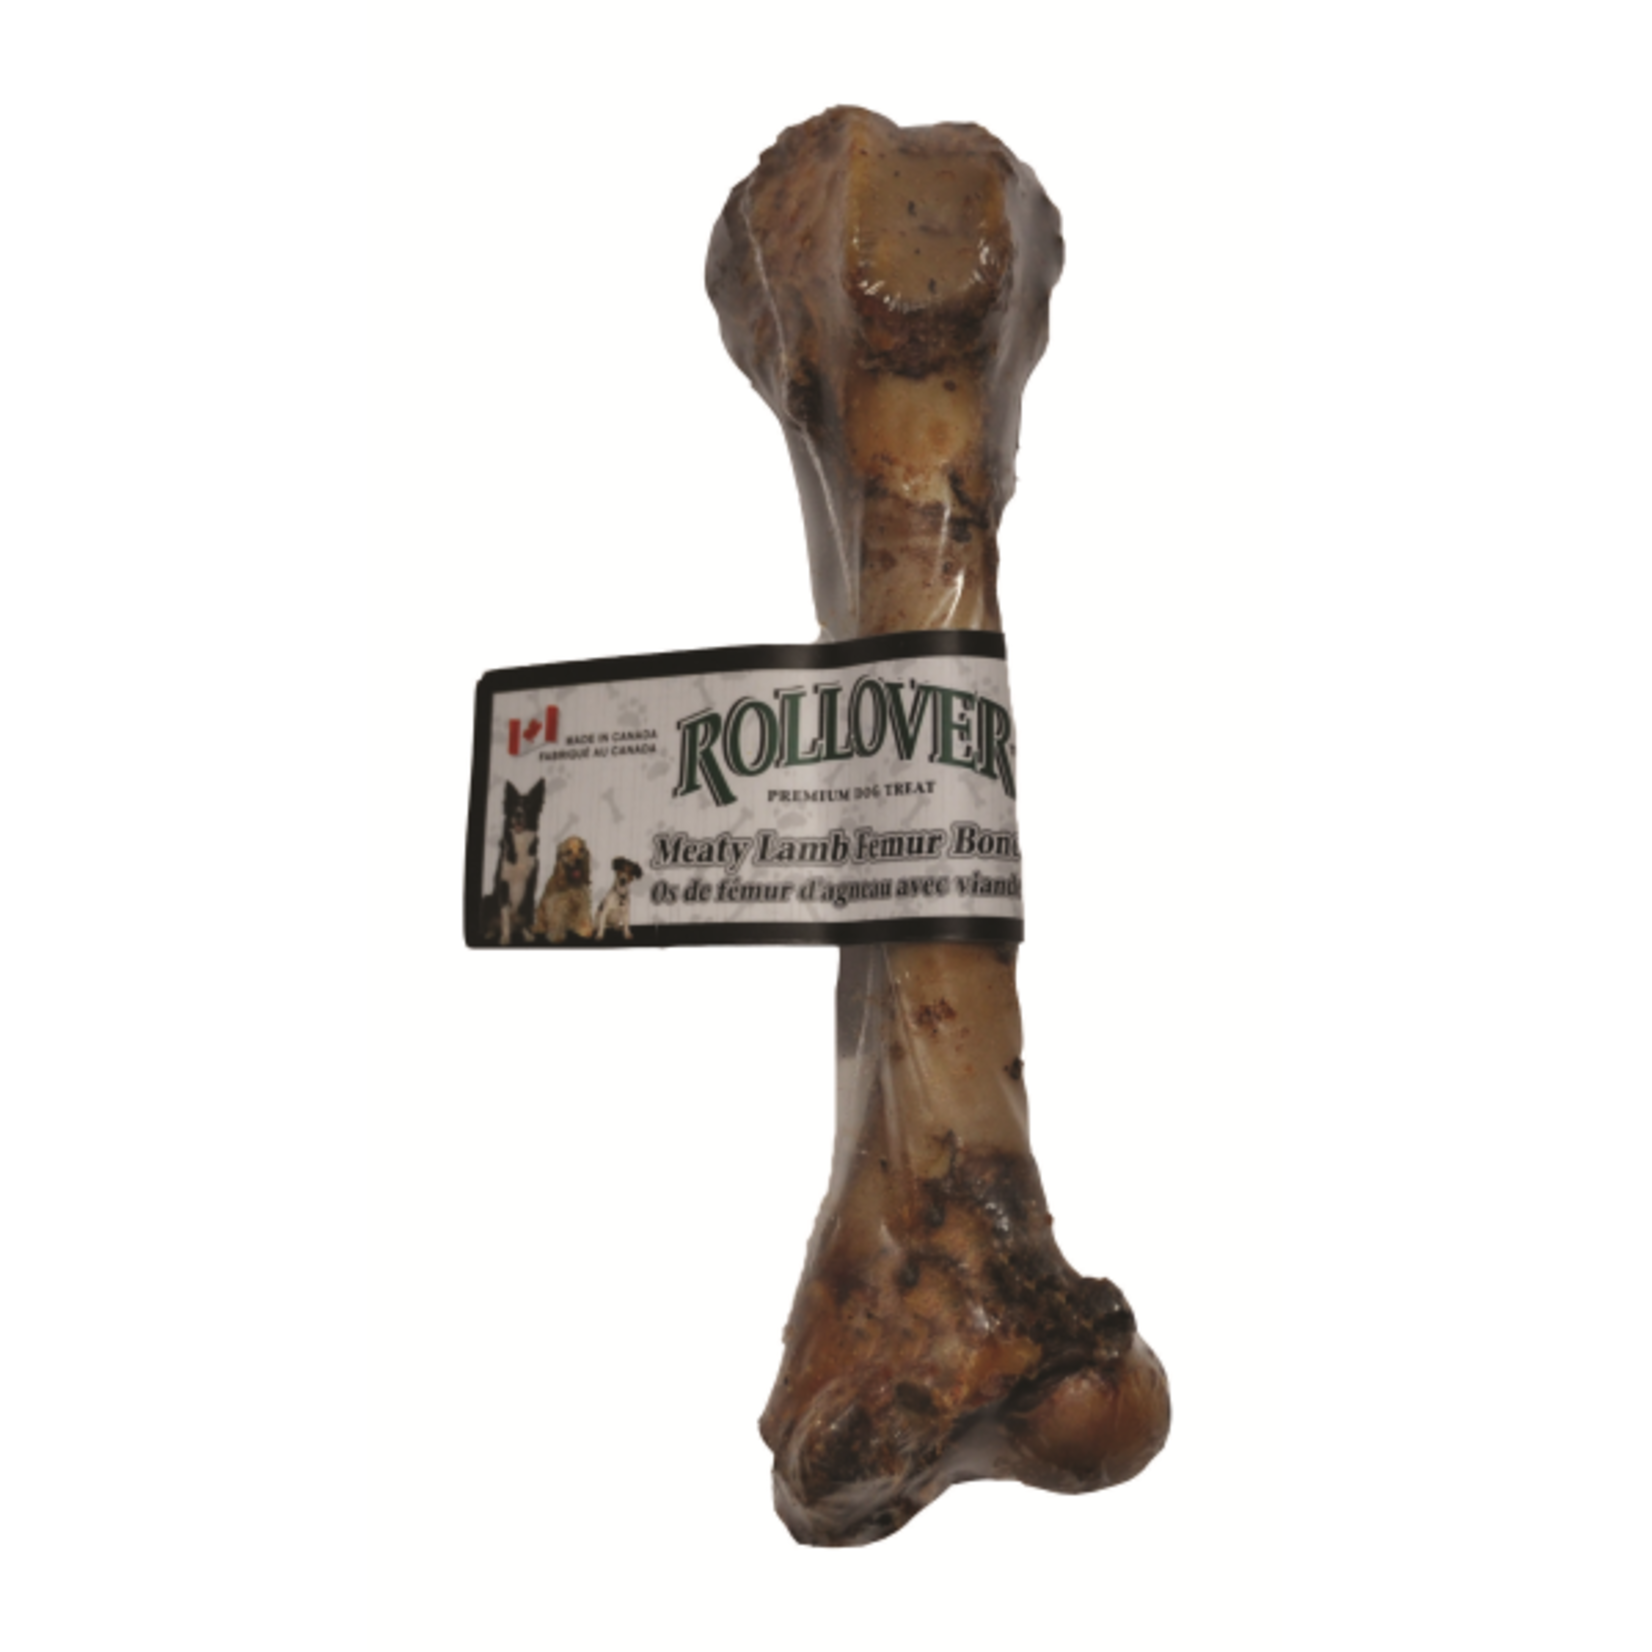 Rollover Lamb Femur Bone- Rollover